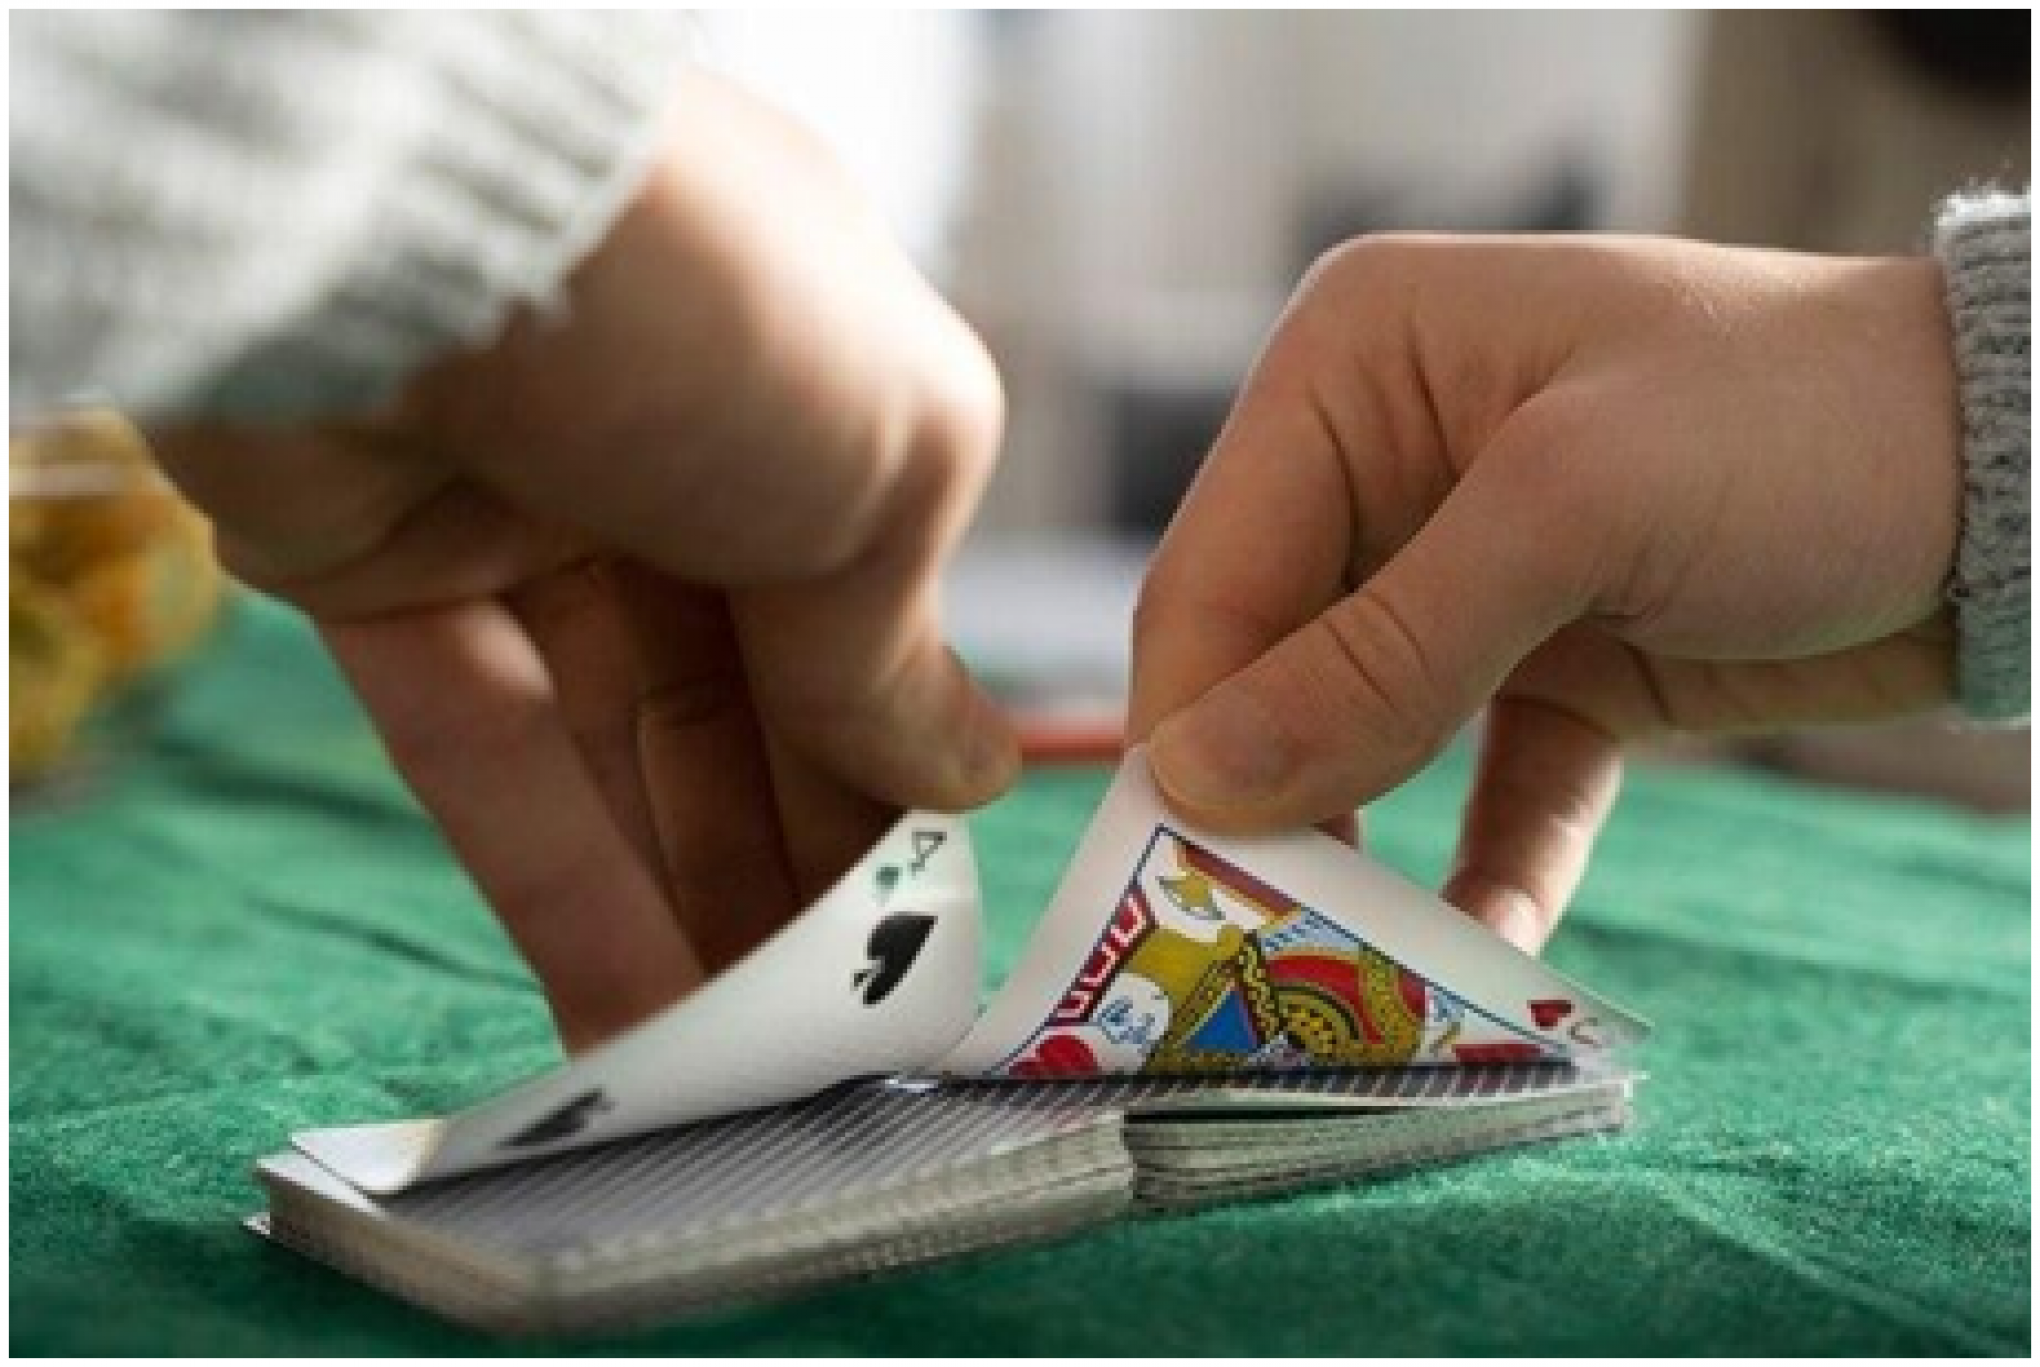 jogo de cassino online com cartas de jogar pôquer e moedas de ouro